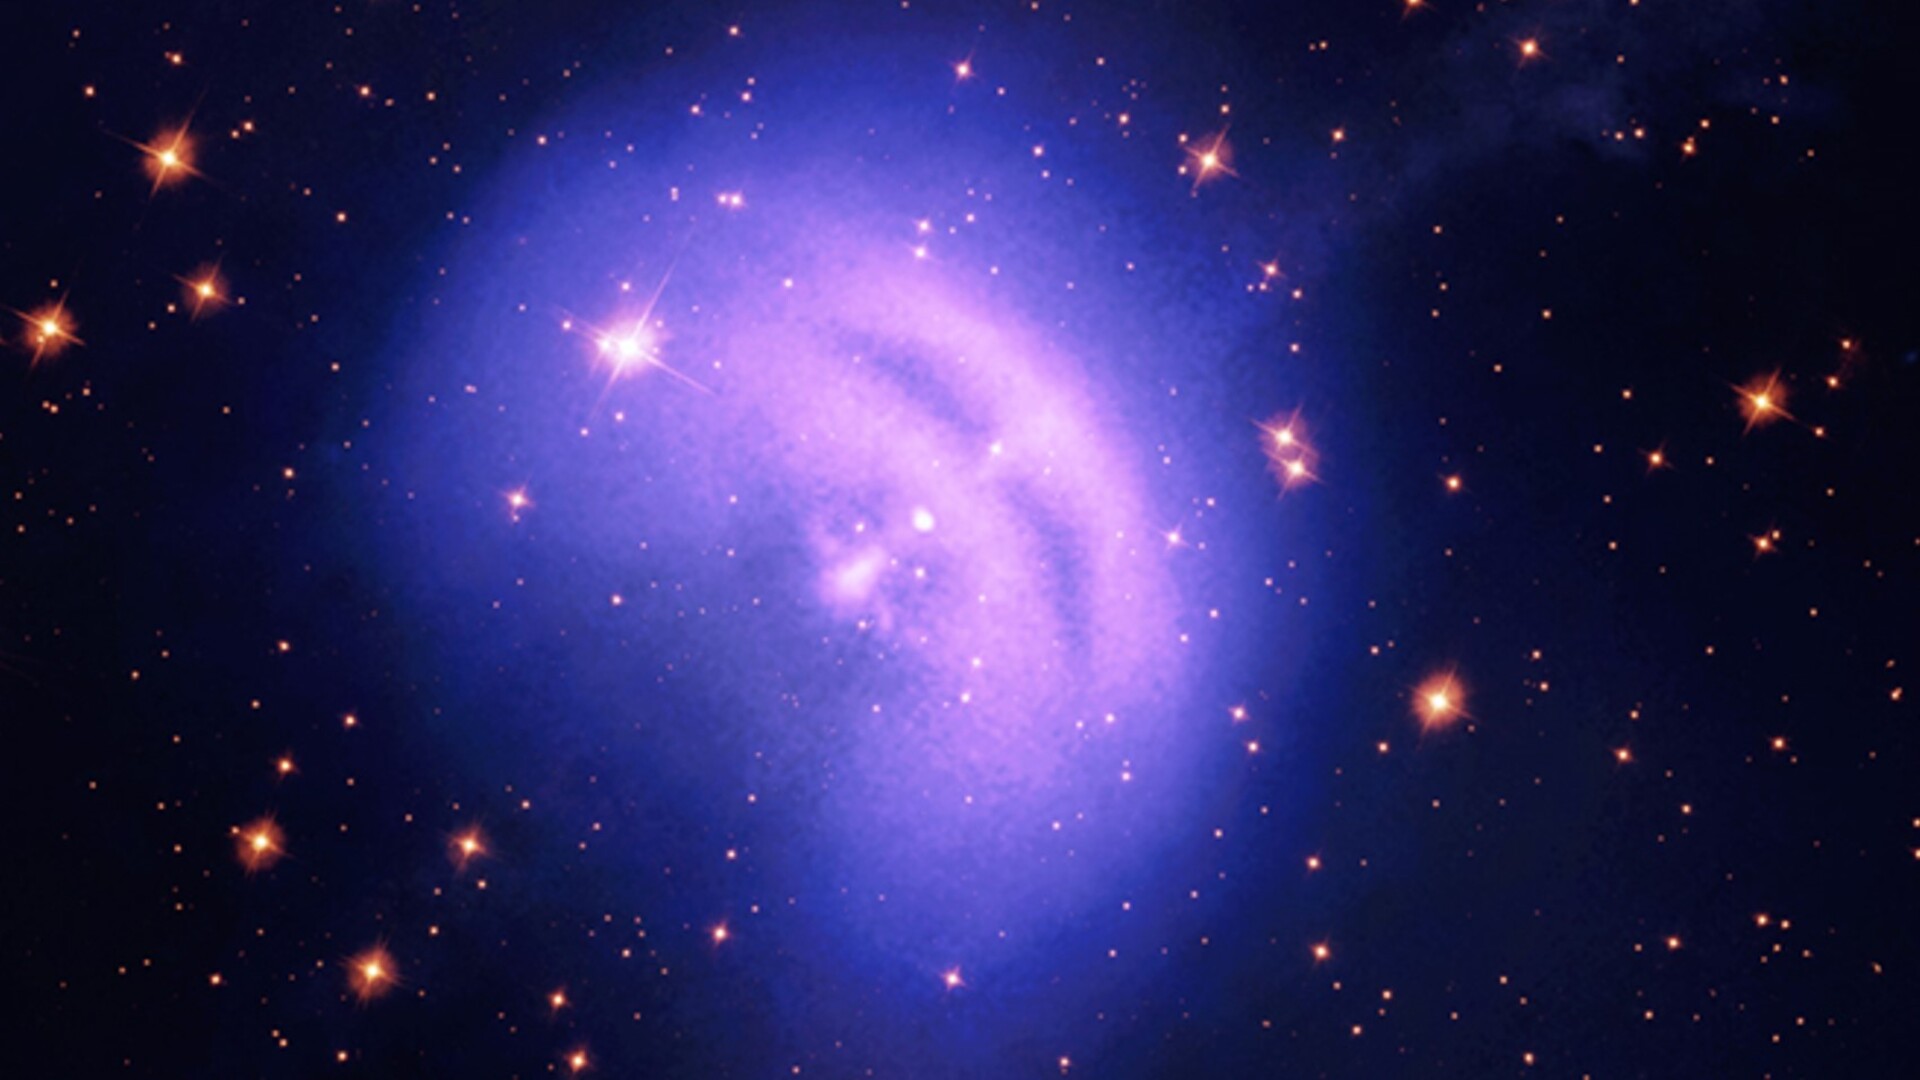 ASI - Vela, una pulsar al limite (della polarizzazione)